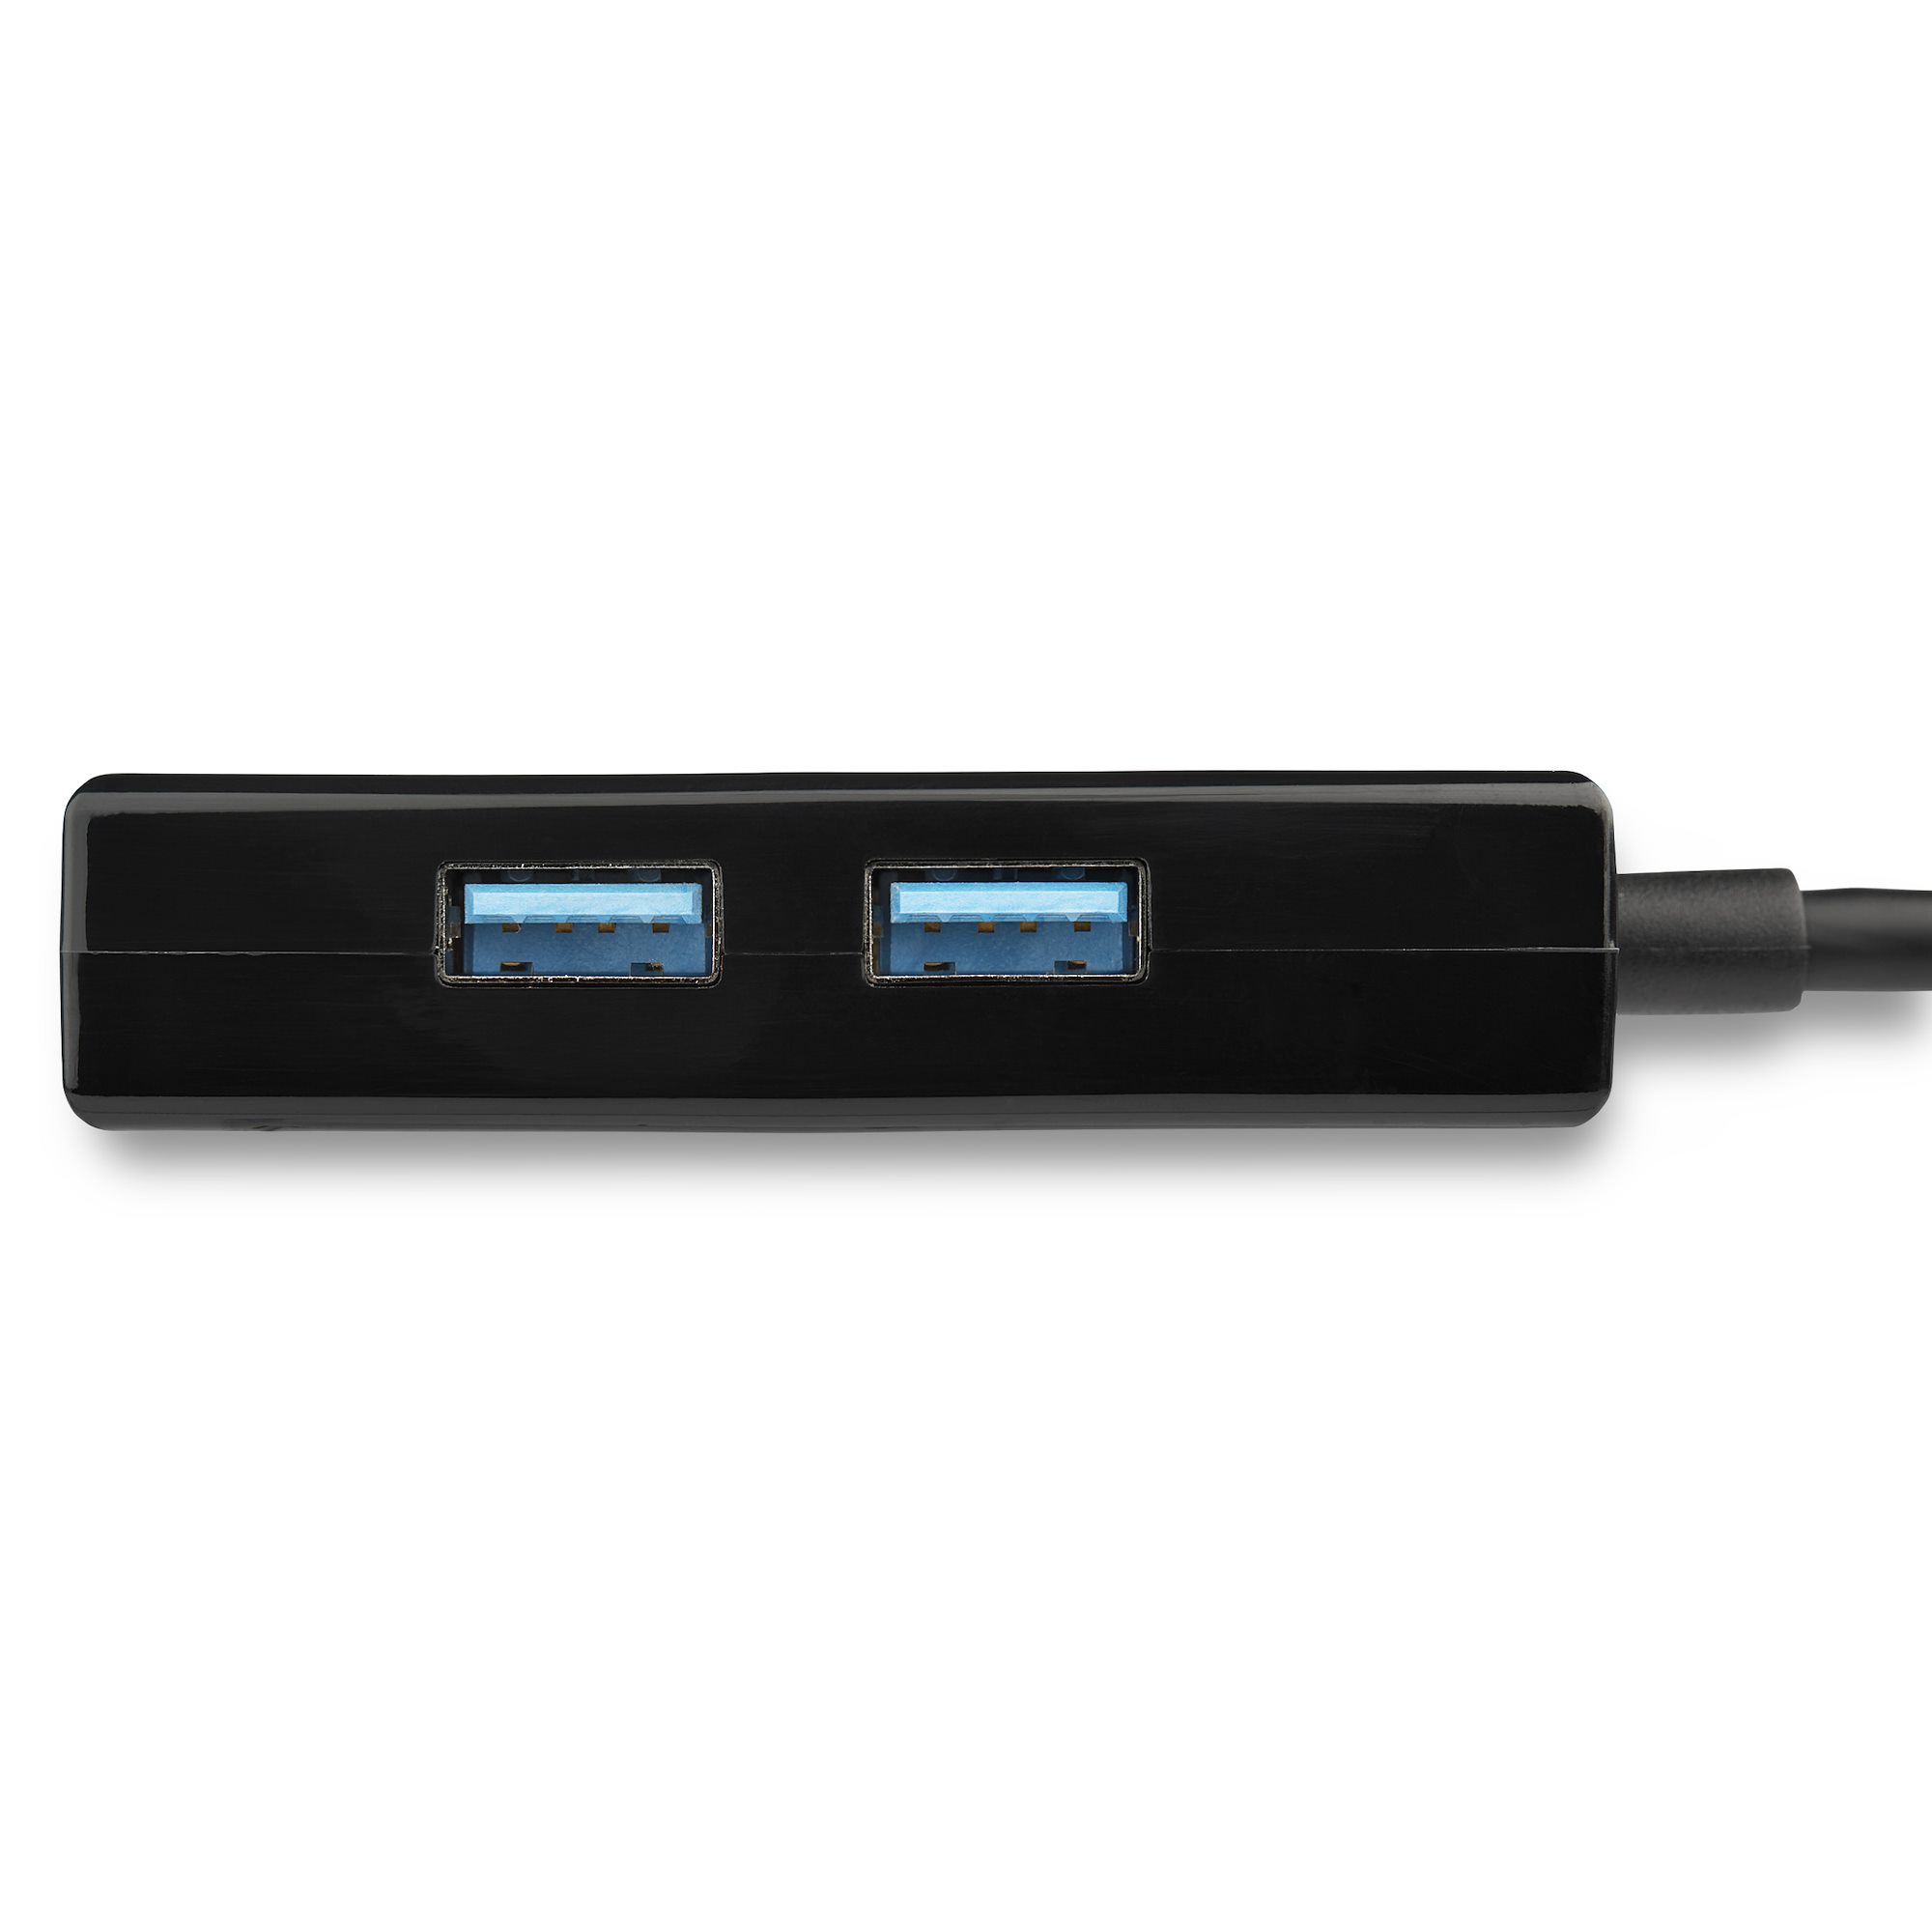 USB 3.0接続ギガビットイーサネット有線LANアダプタ USBハブ内蔵 - USB 